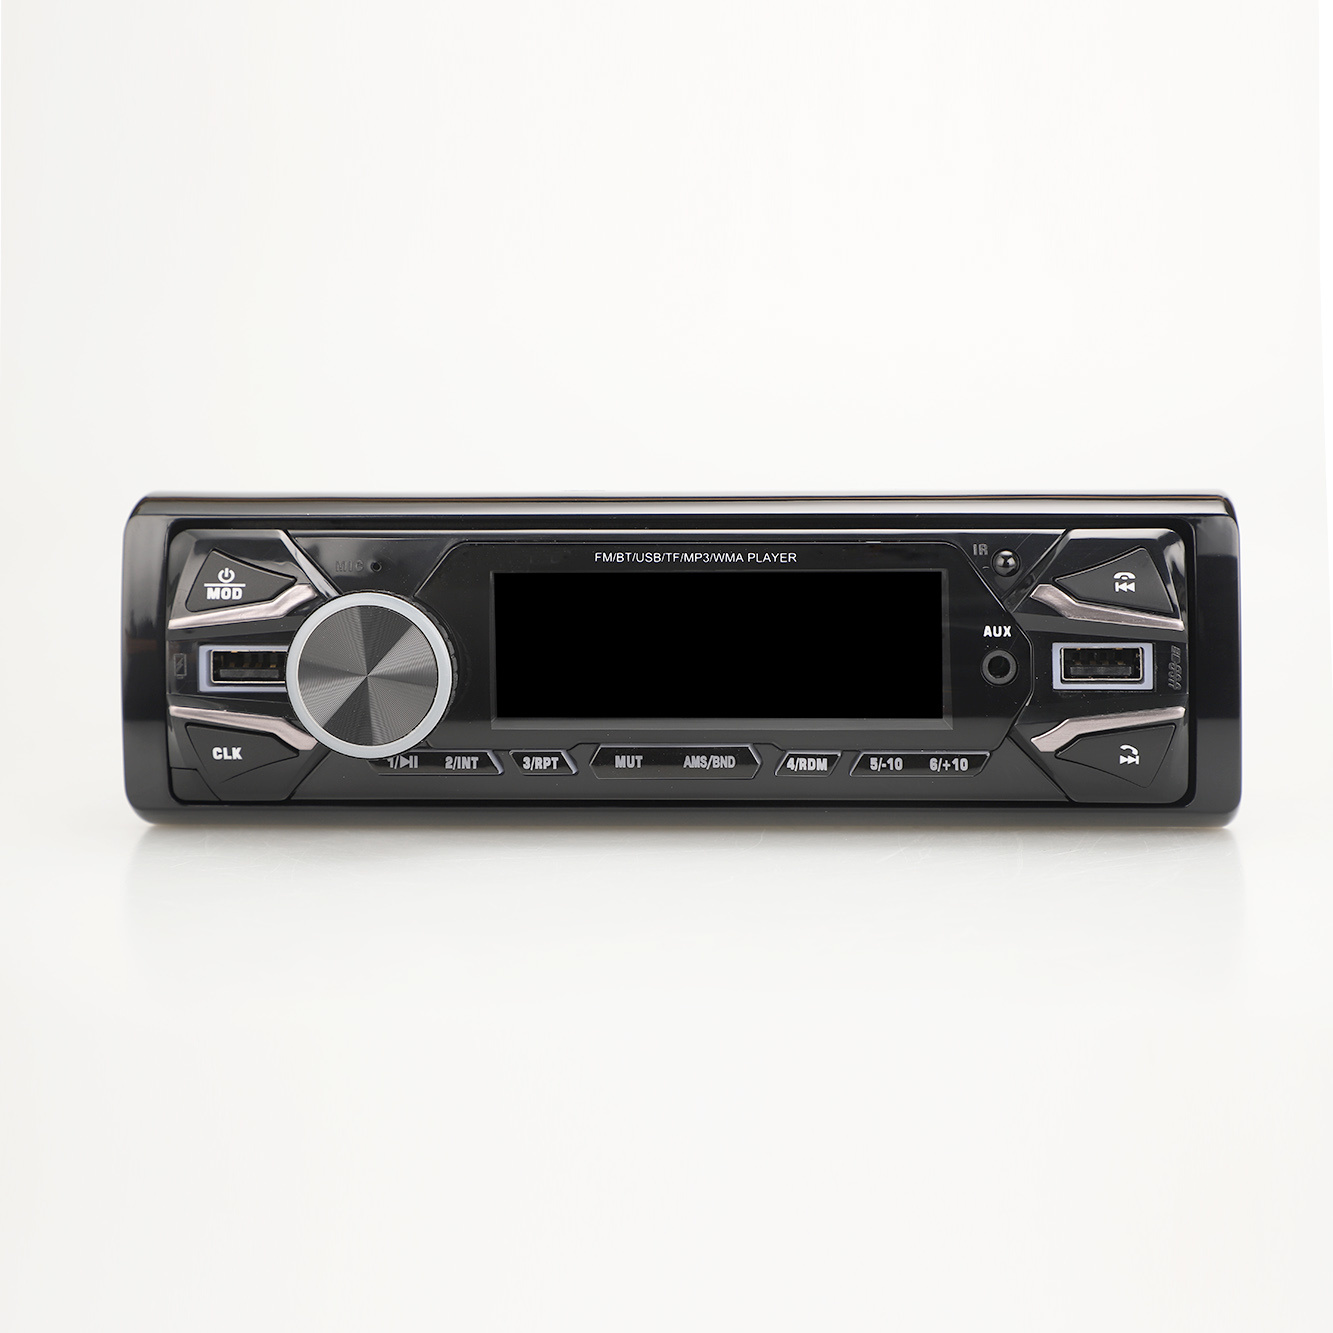 Transmissor FM digital painel fixo carro USB / SD rádio carro MP3 player com entrada 2USB dente azul